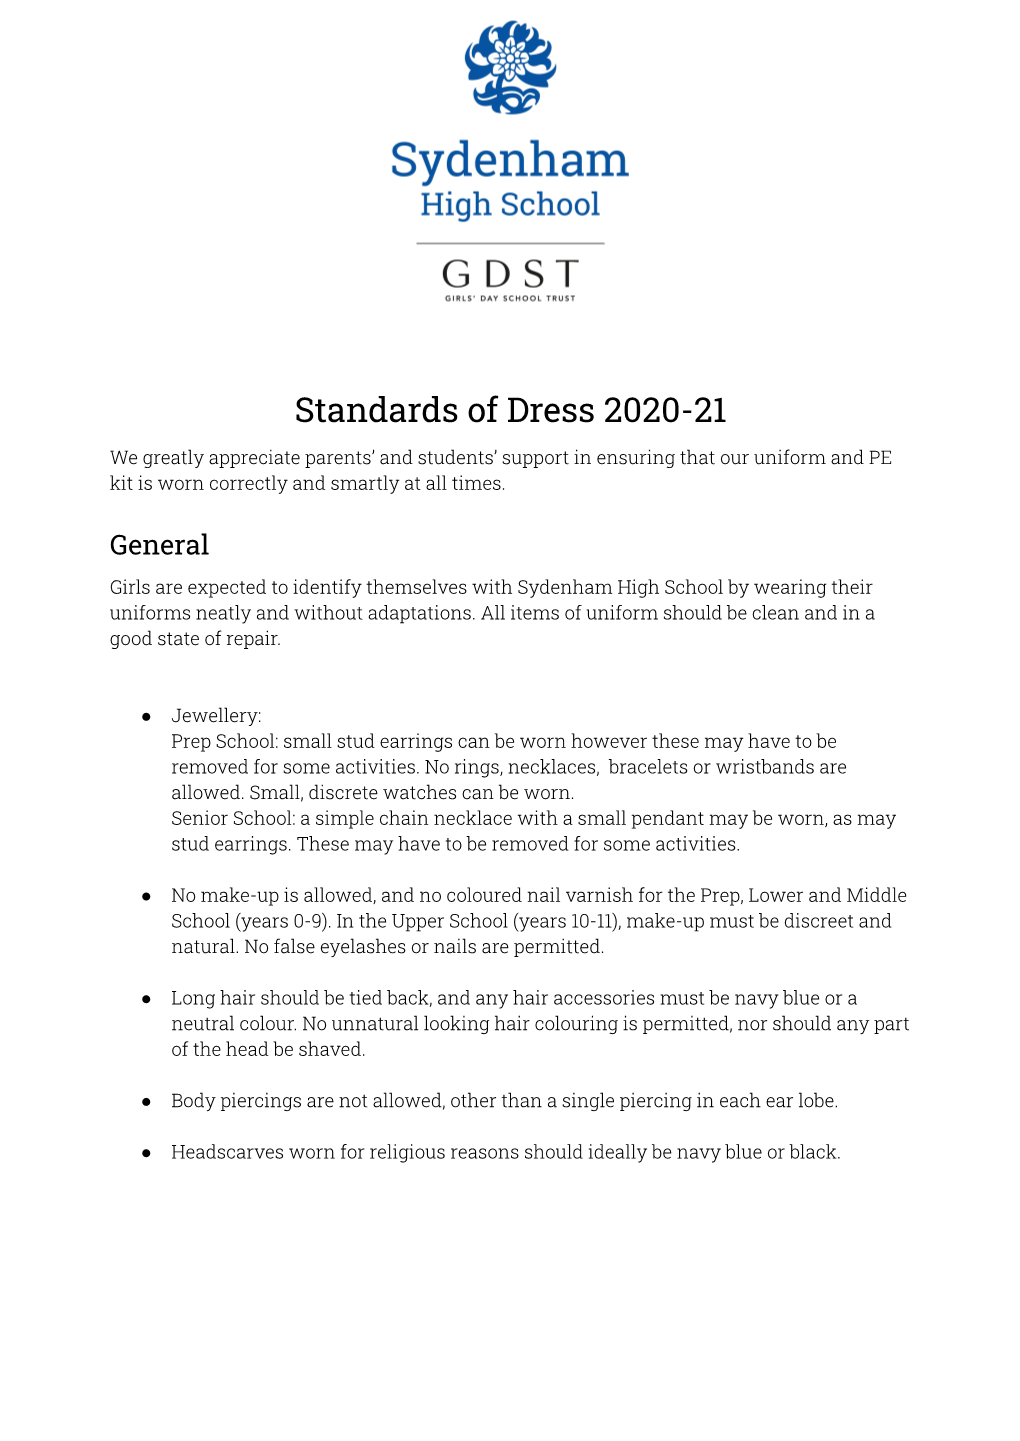 Sydenham-High-School-Uniform-Regulations-2020-21.Pdf